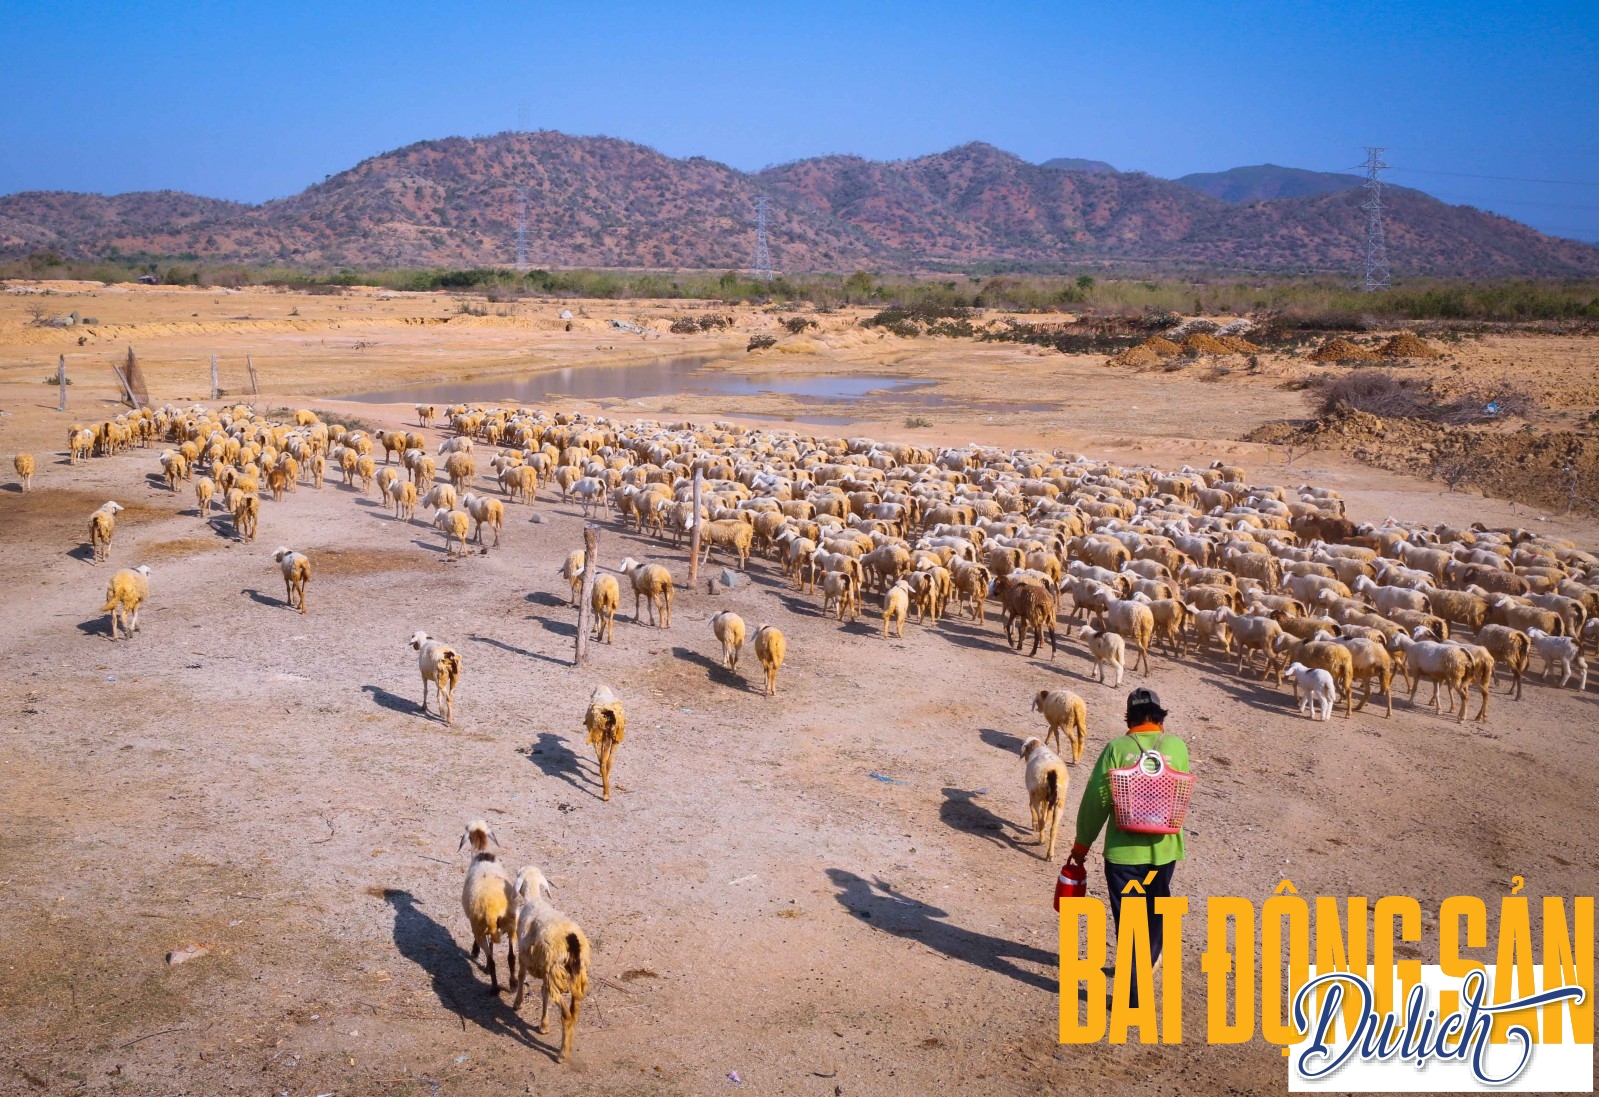 Trang trại cừu ở Ninh Thuận có nơi lên đến cả nghìn con. Mỗi đợt thả chuồng, chúng đi theo một đường dài như đang hành quân xung trận. Trong ảnh là anh Đào Quang Lơ tranh thủ lùa đàn cừu đi chăn sớm, để chúng kiếm được nhiều thức ăn hơn...